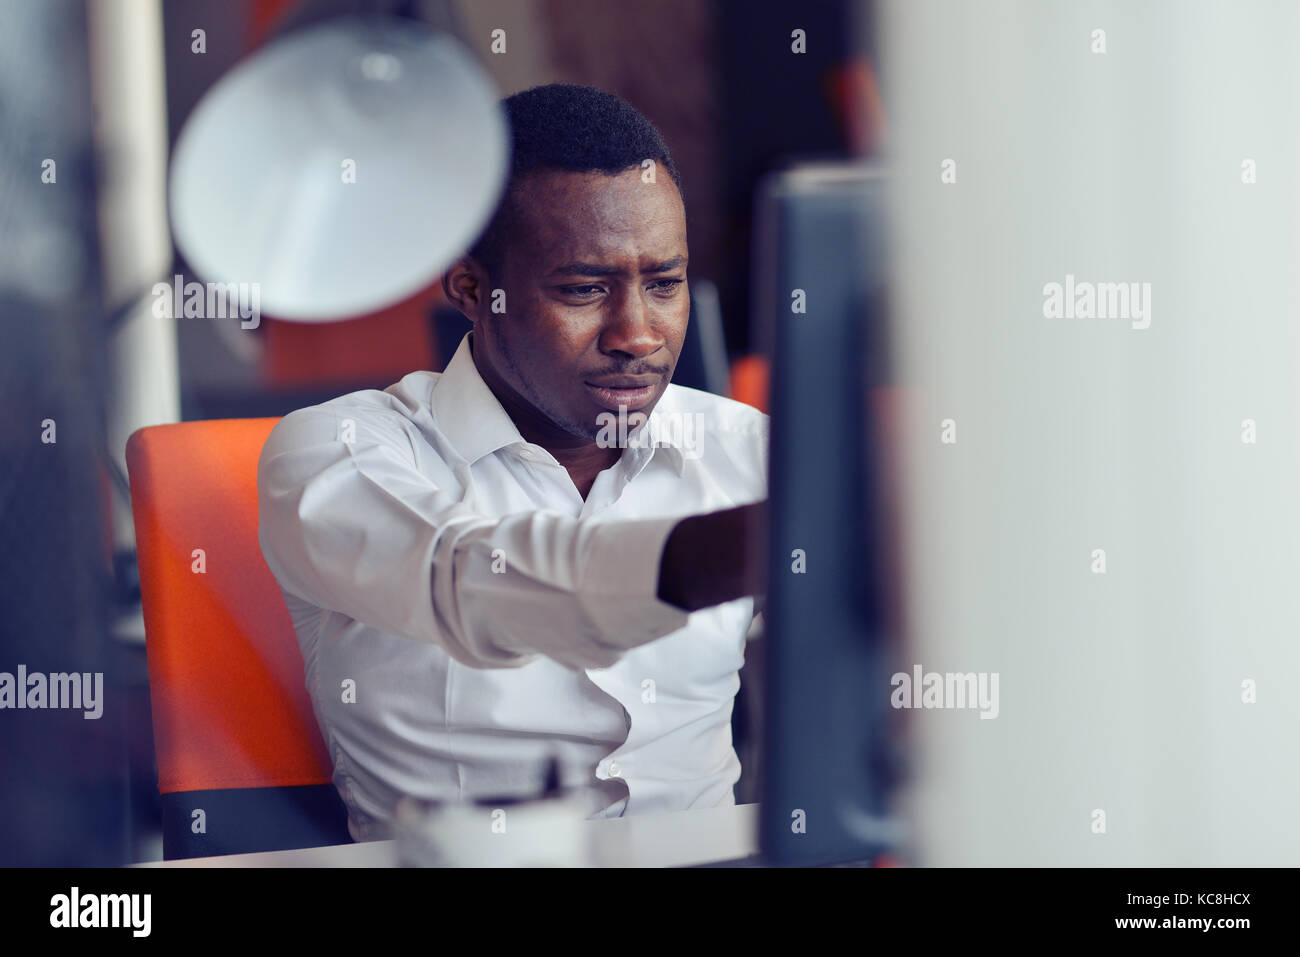 Deluso imprenditore africano è stordito e confuso da un errore nei documenti ufficiali. Foto Stock